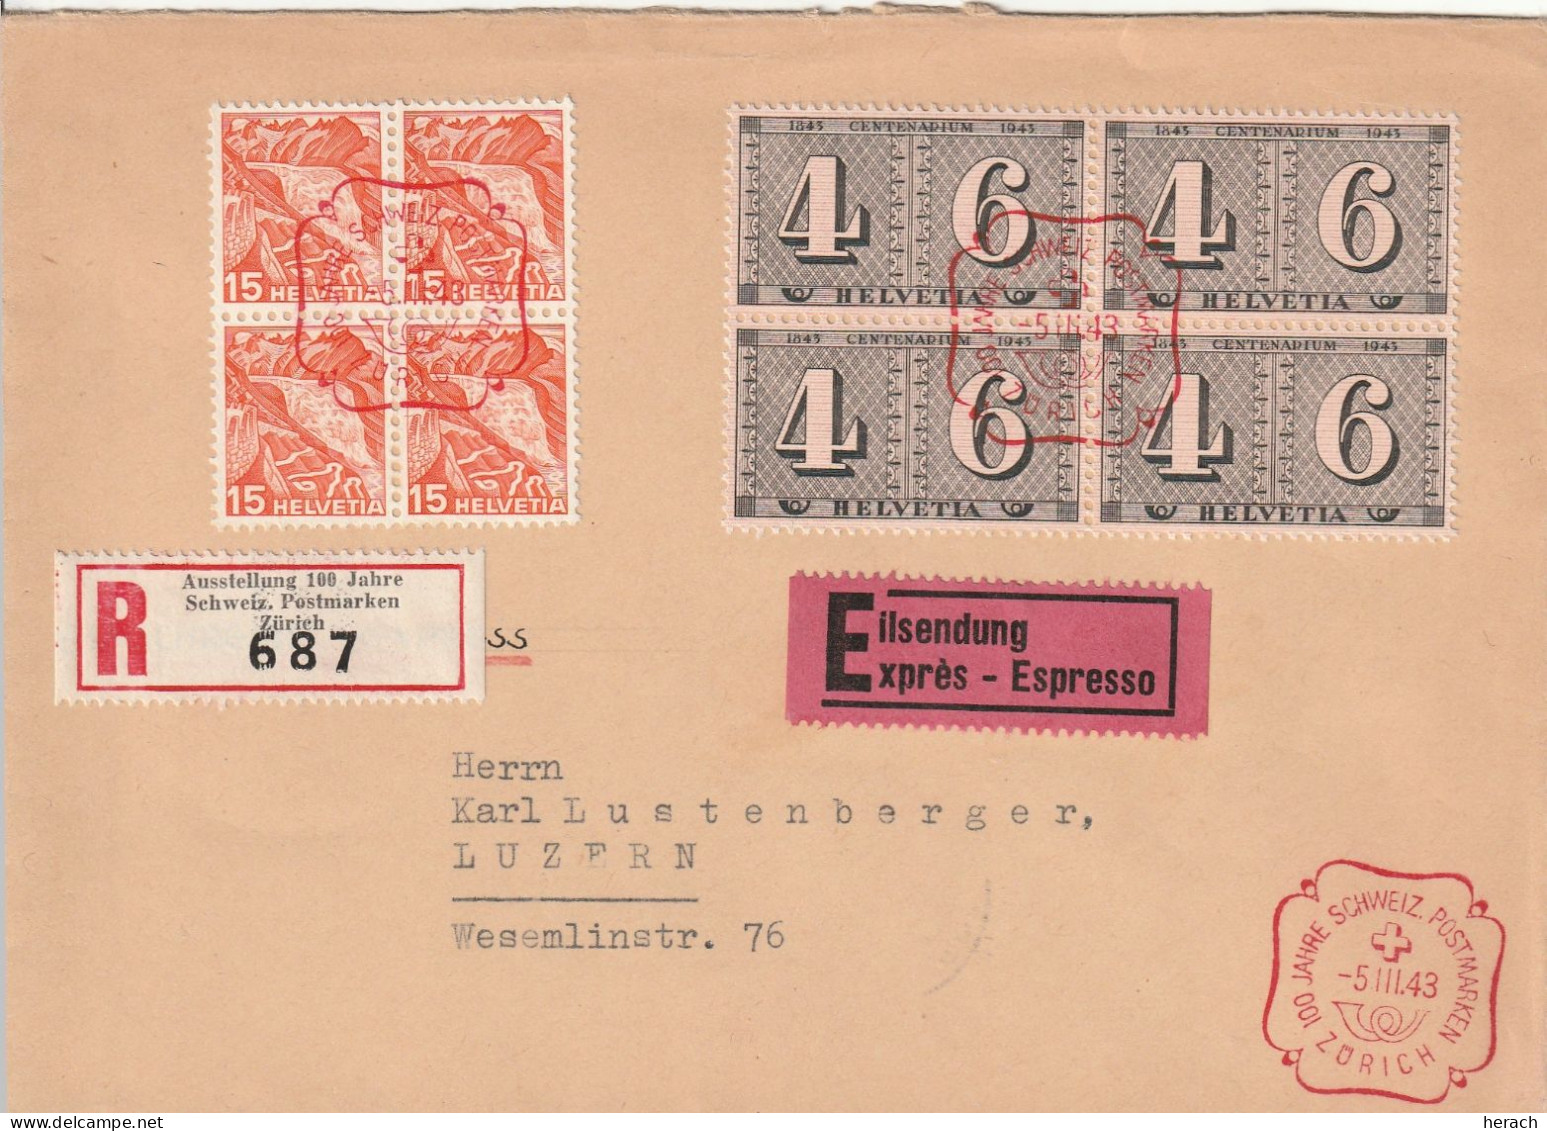 Suisse Lettre Recommandée Par Exprès Zürich 1943 - Marcophilie